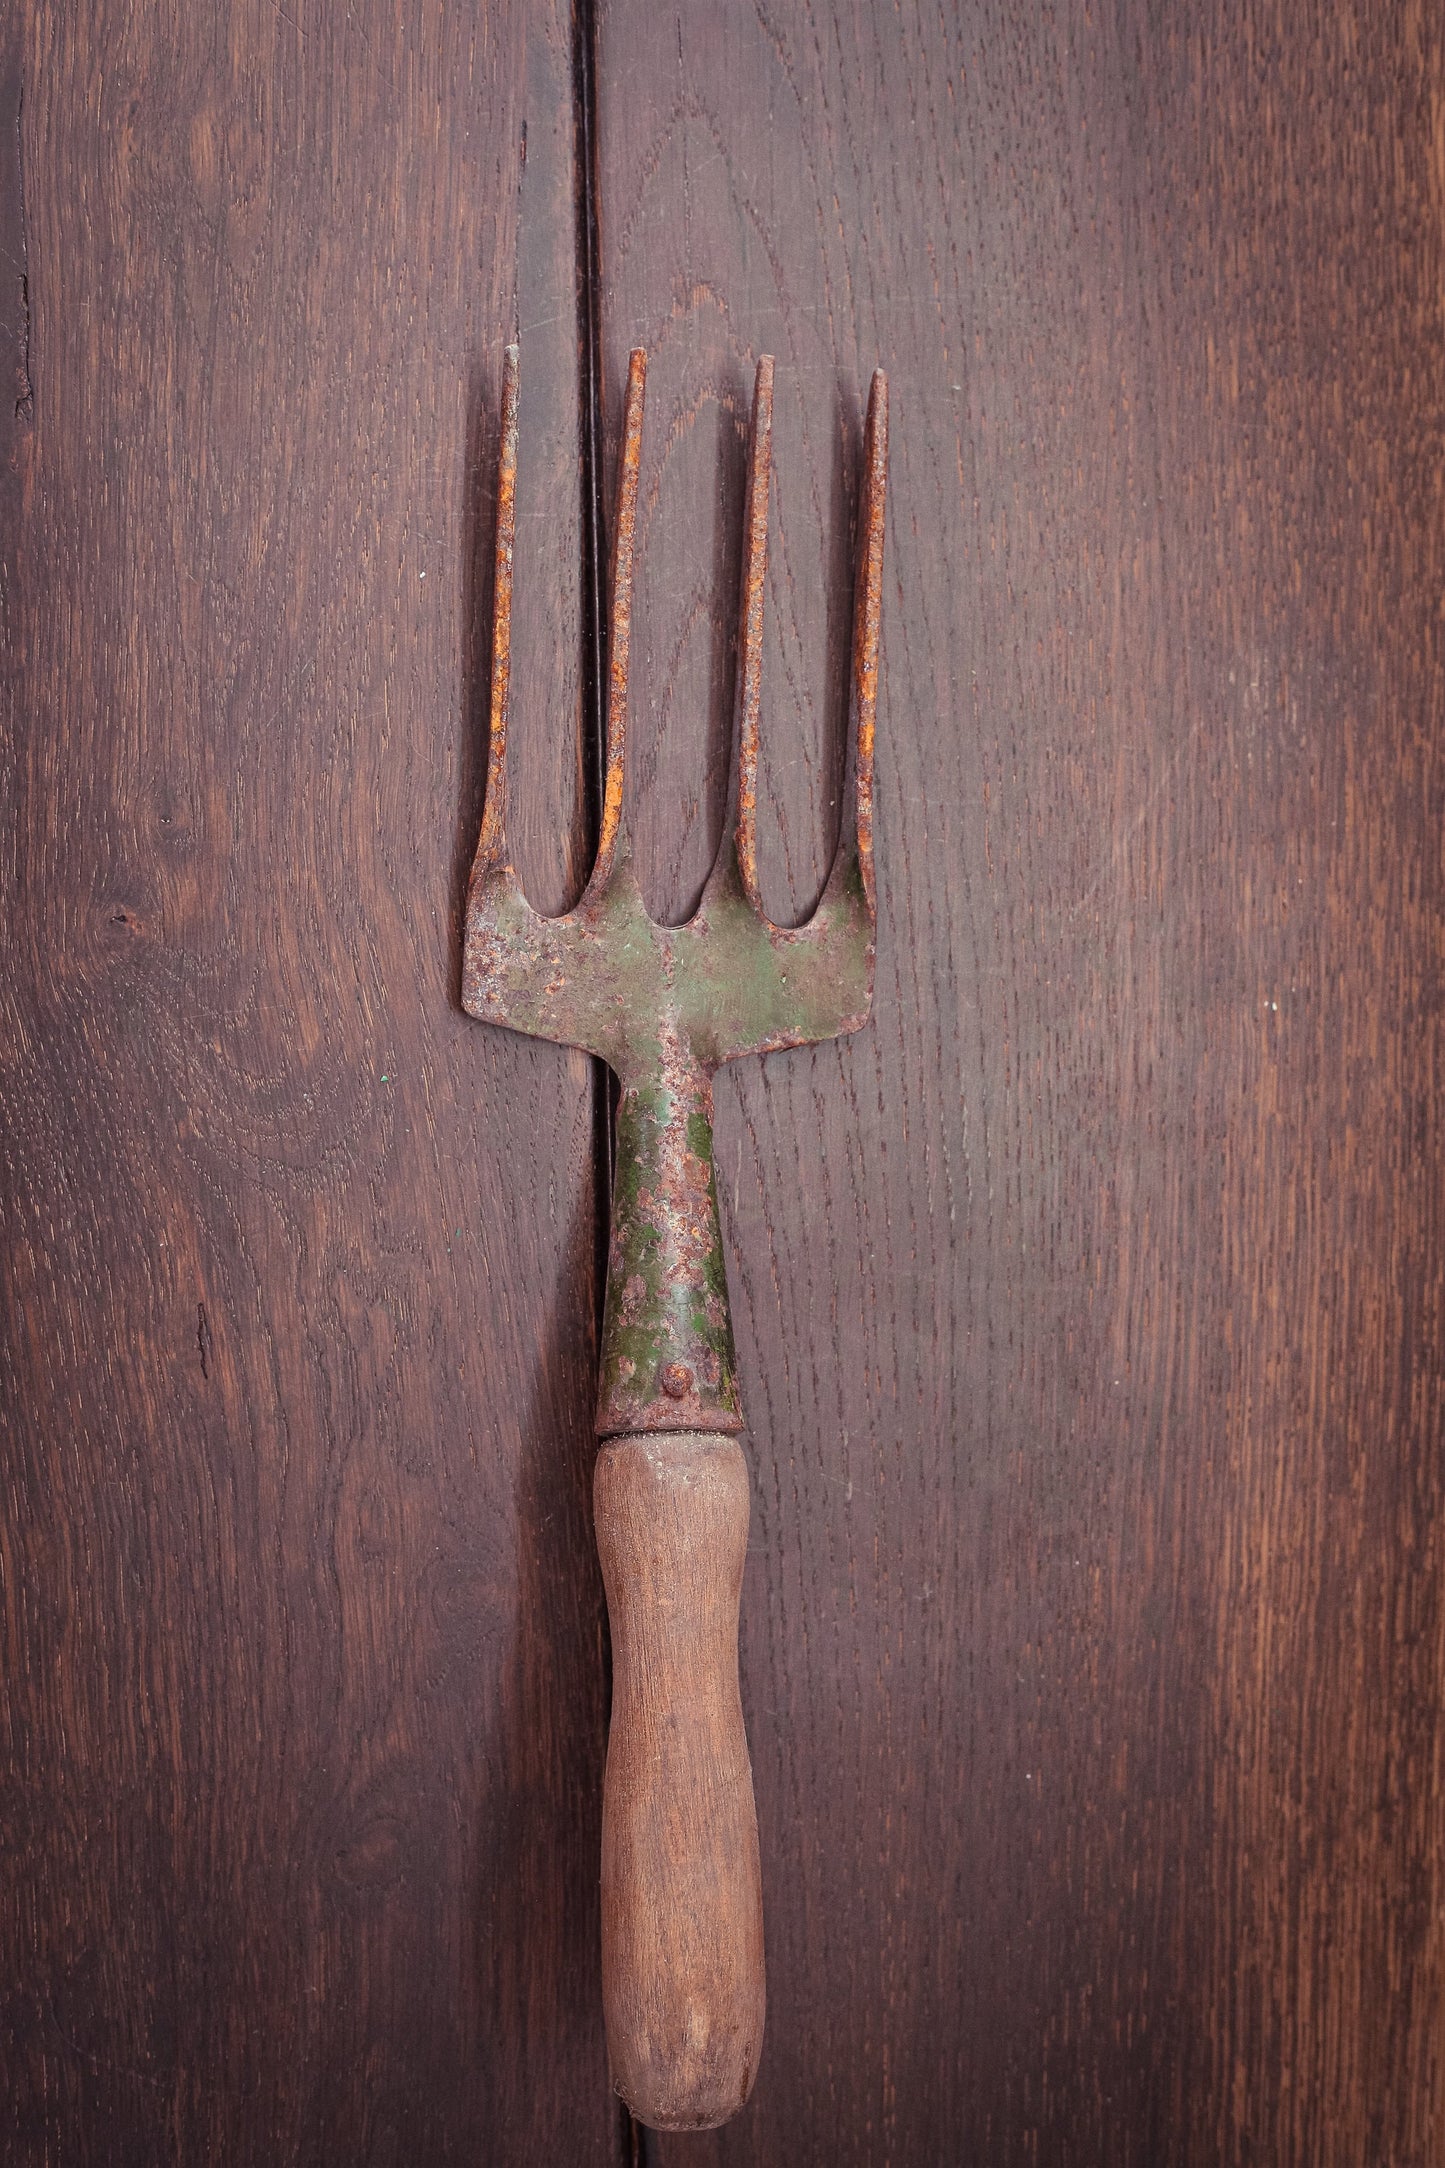 Rusty Metal Garden Fork with Wood Handle - Vintage Garden Tool